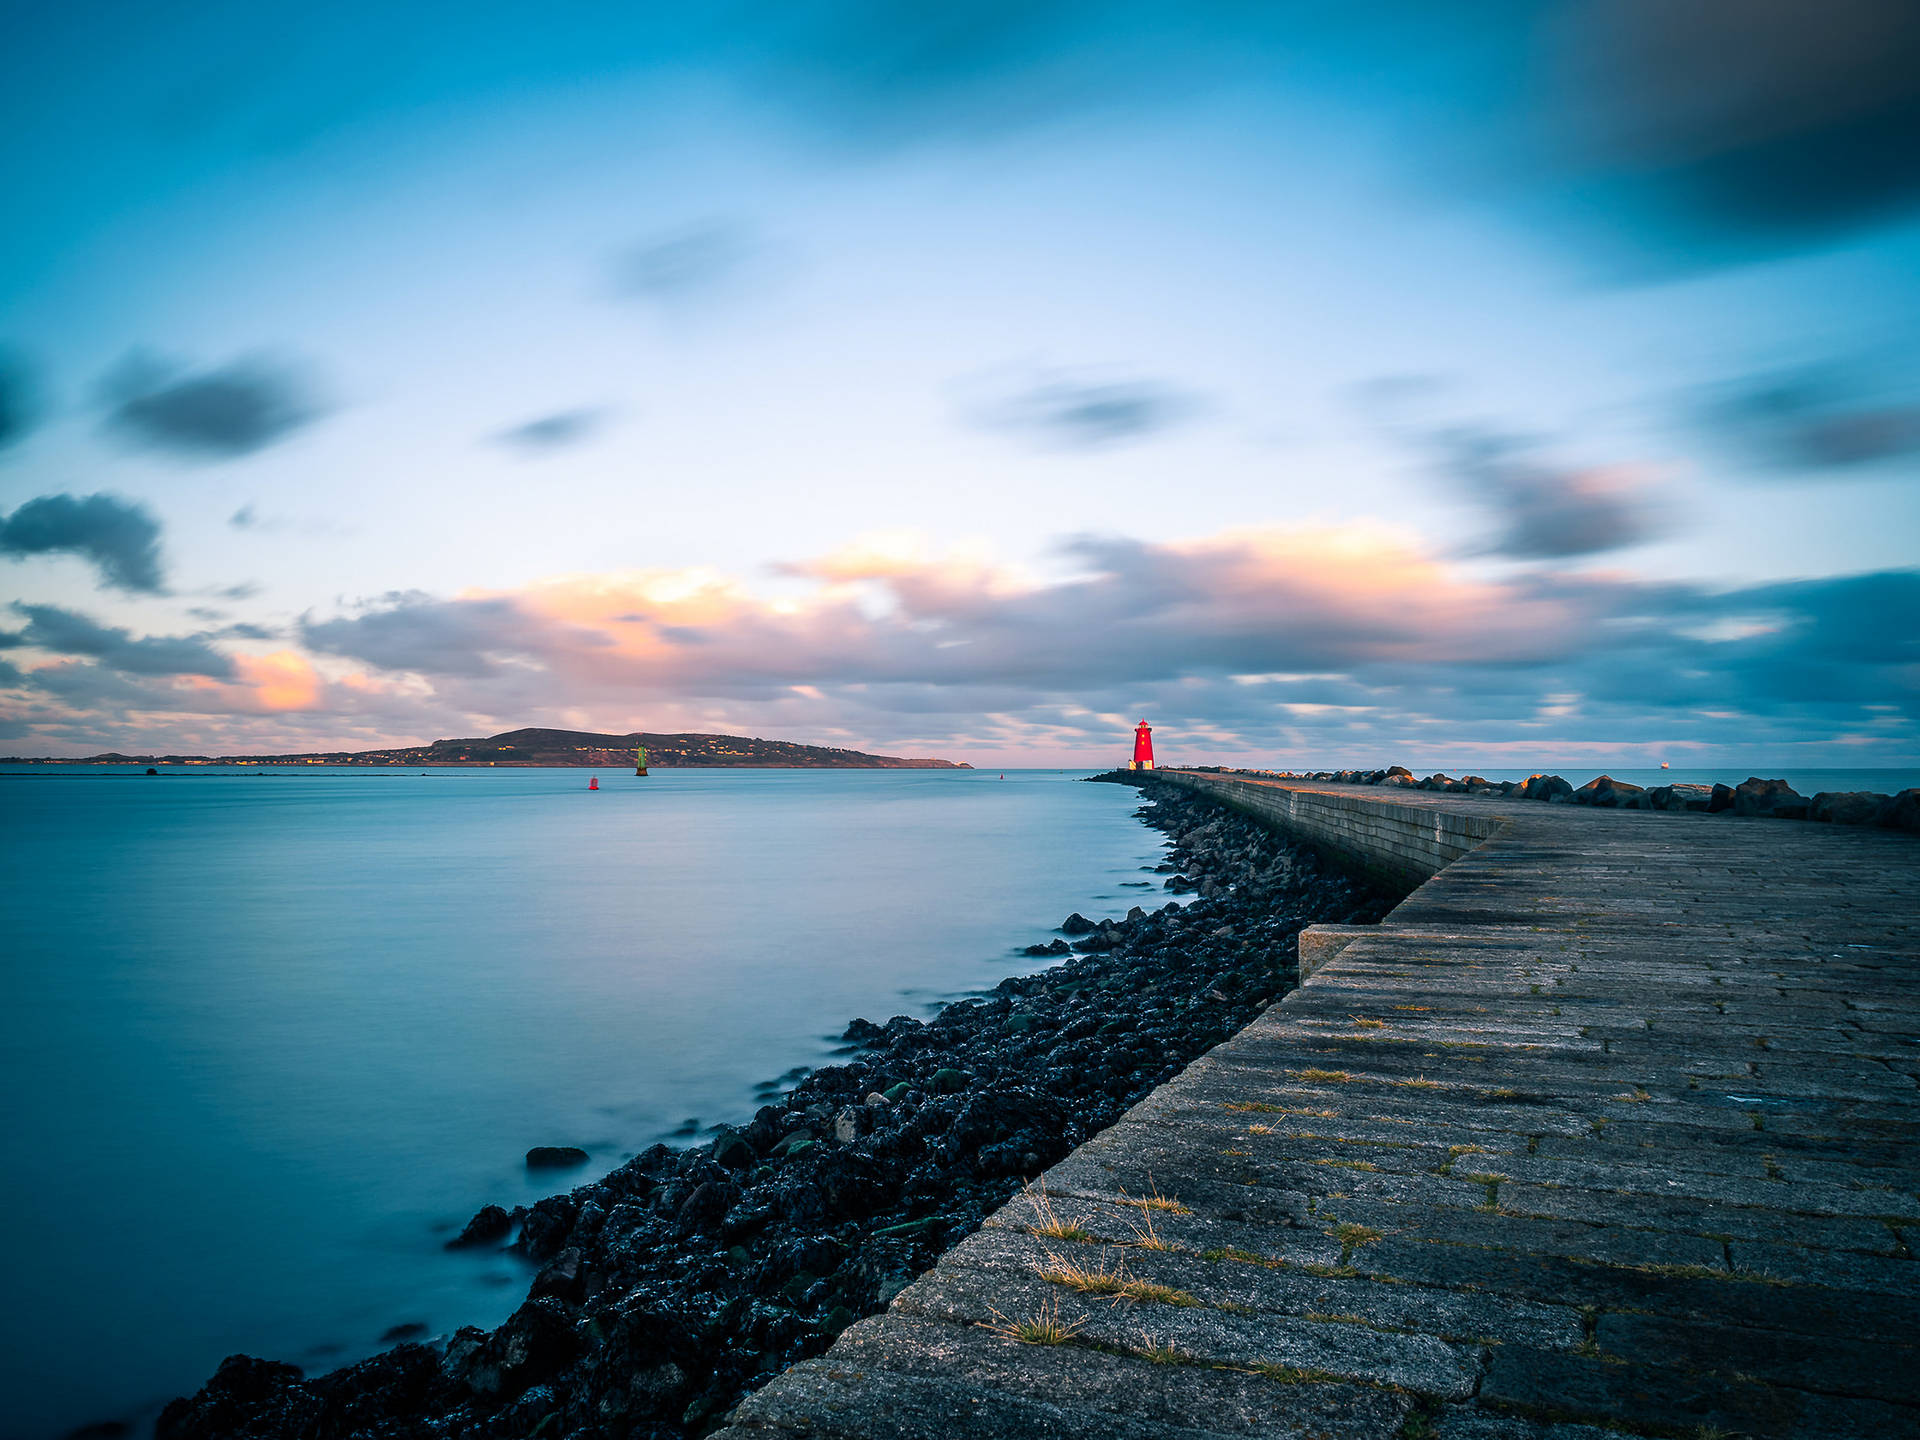 Poolbeg Lighthouse Dublin Ireland